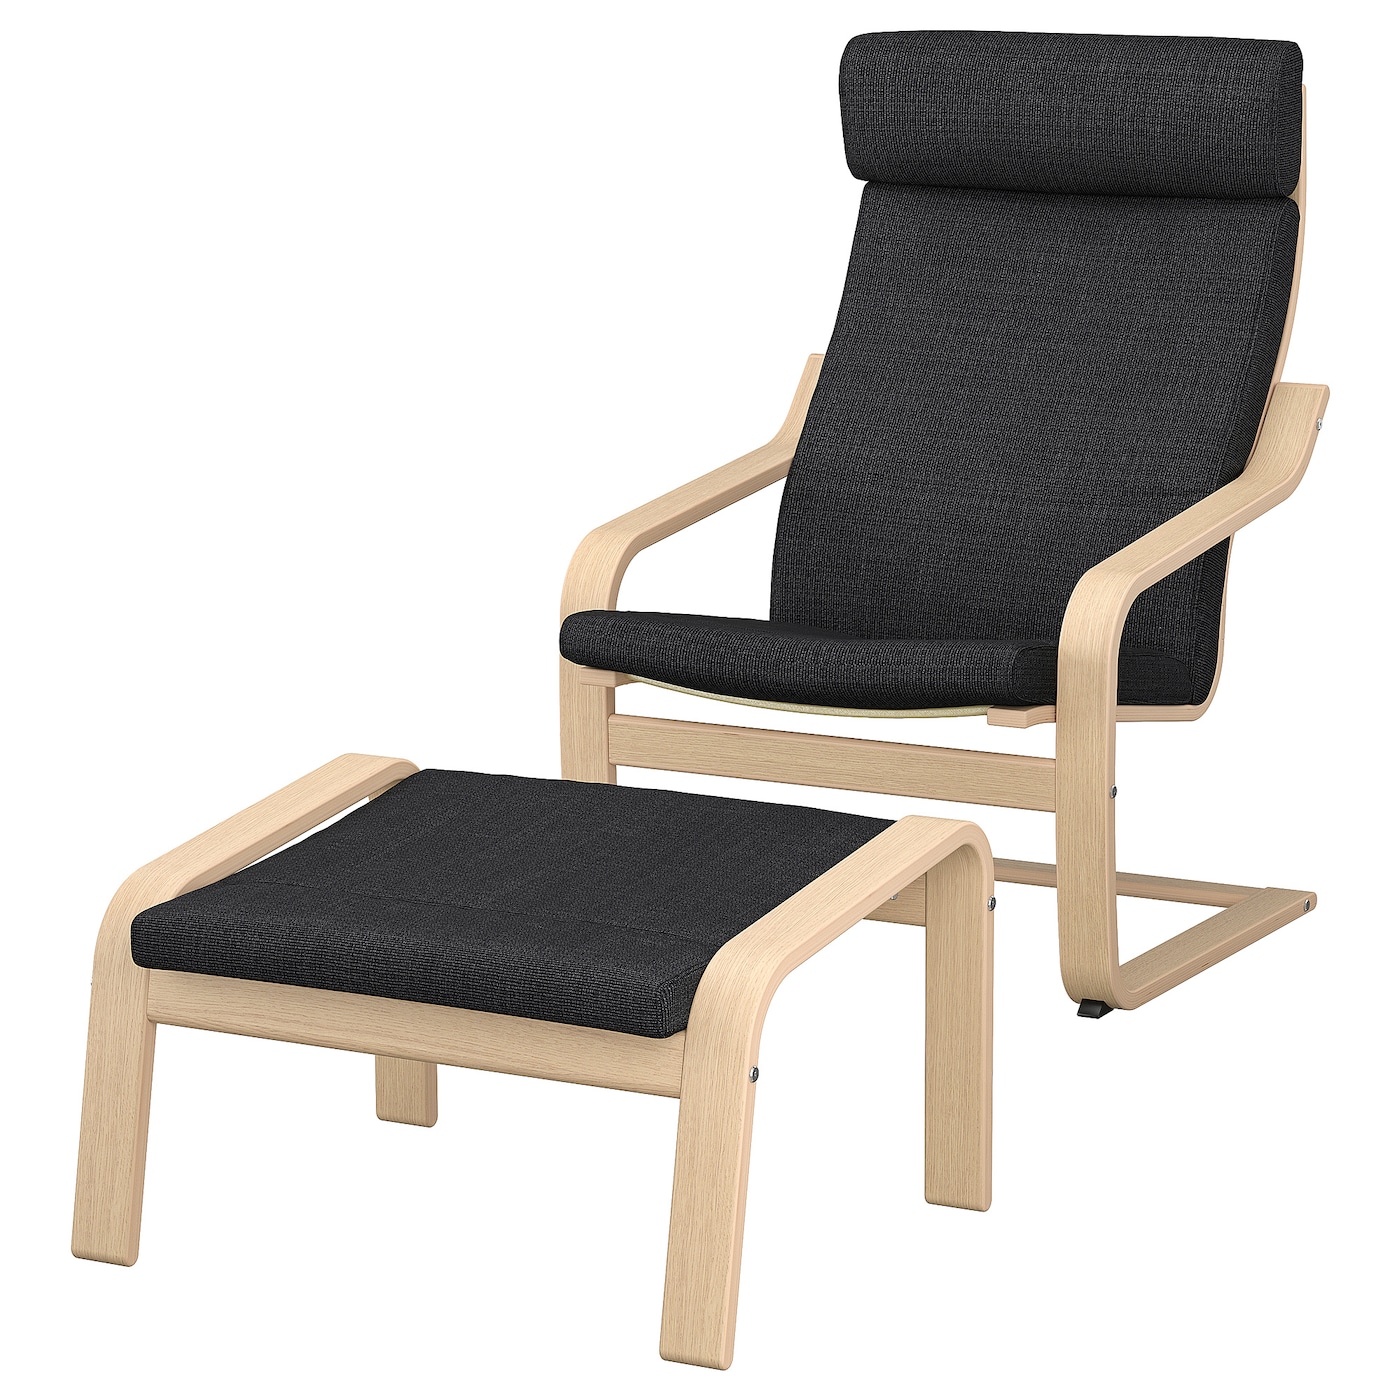 ПОЭНГ Кресло и подставка для ног, дубовый шпон светлой морилки/Хилларед антрацит POÄNG IKEA